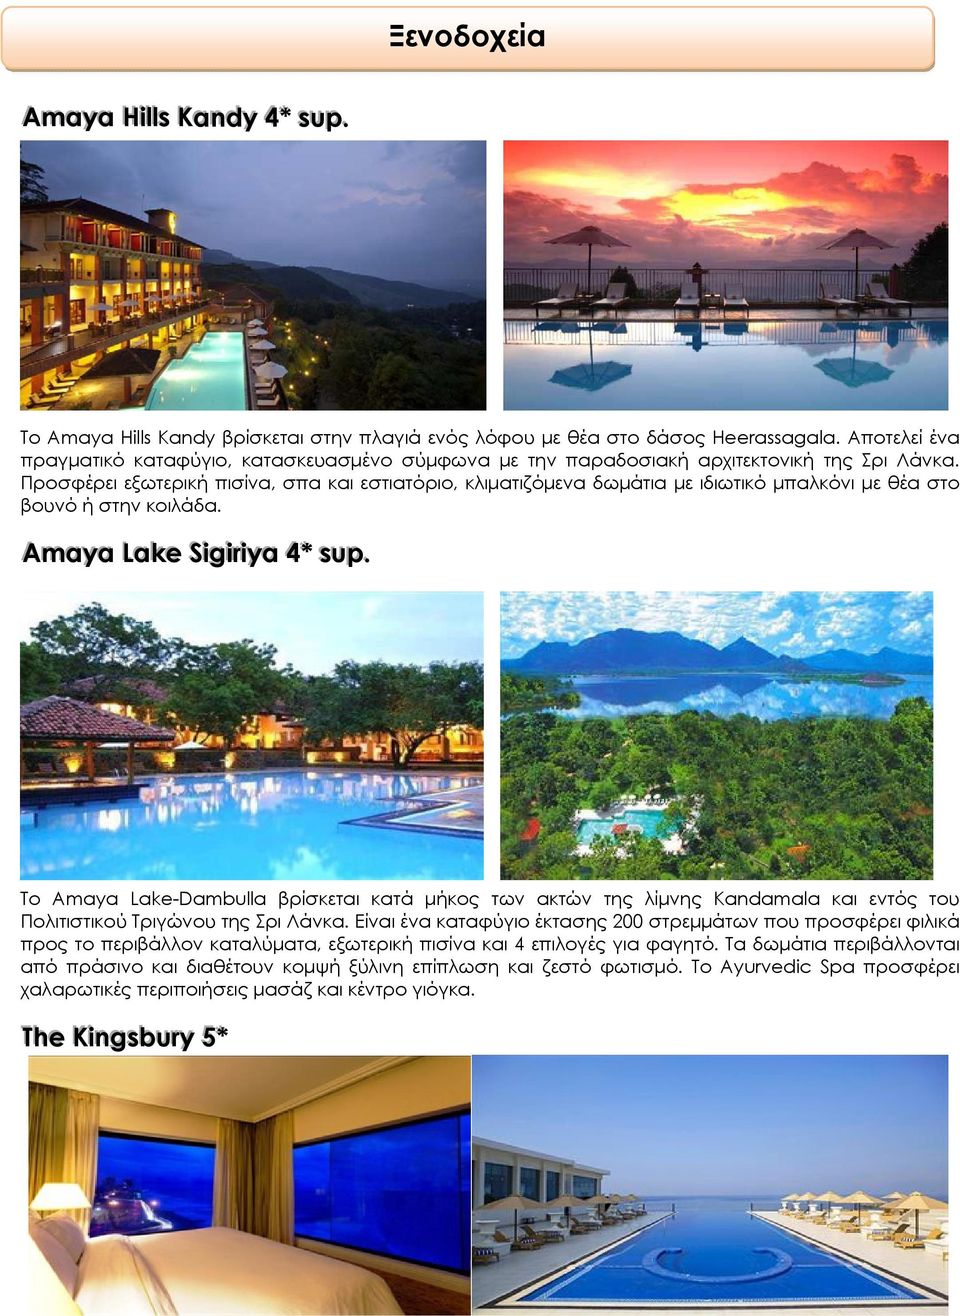 Προσφέρει εξωτερική πισίνα, σπα και εστιατόριο, κλιματιζόμενα δωμάτια με ιδιωτικό μπαλκόνι με θέα στο βουνό ή στην κοιλάδα. Amaya LLake Sigirri iya 4** ssup.